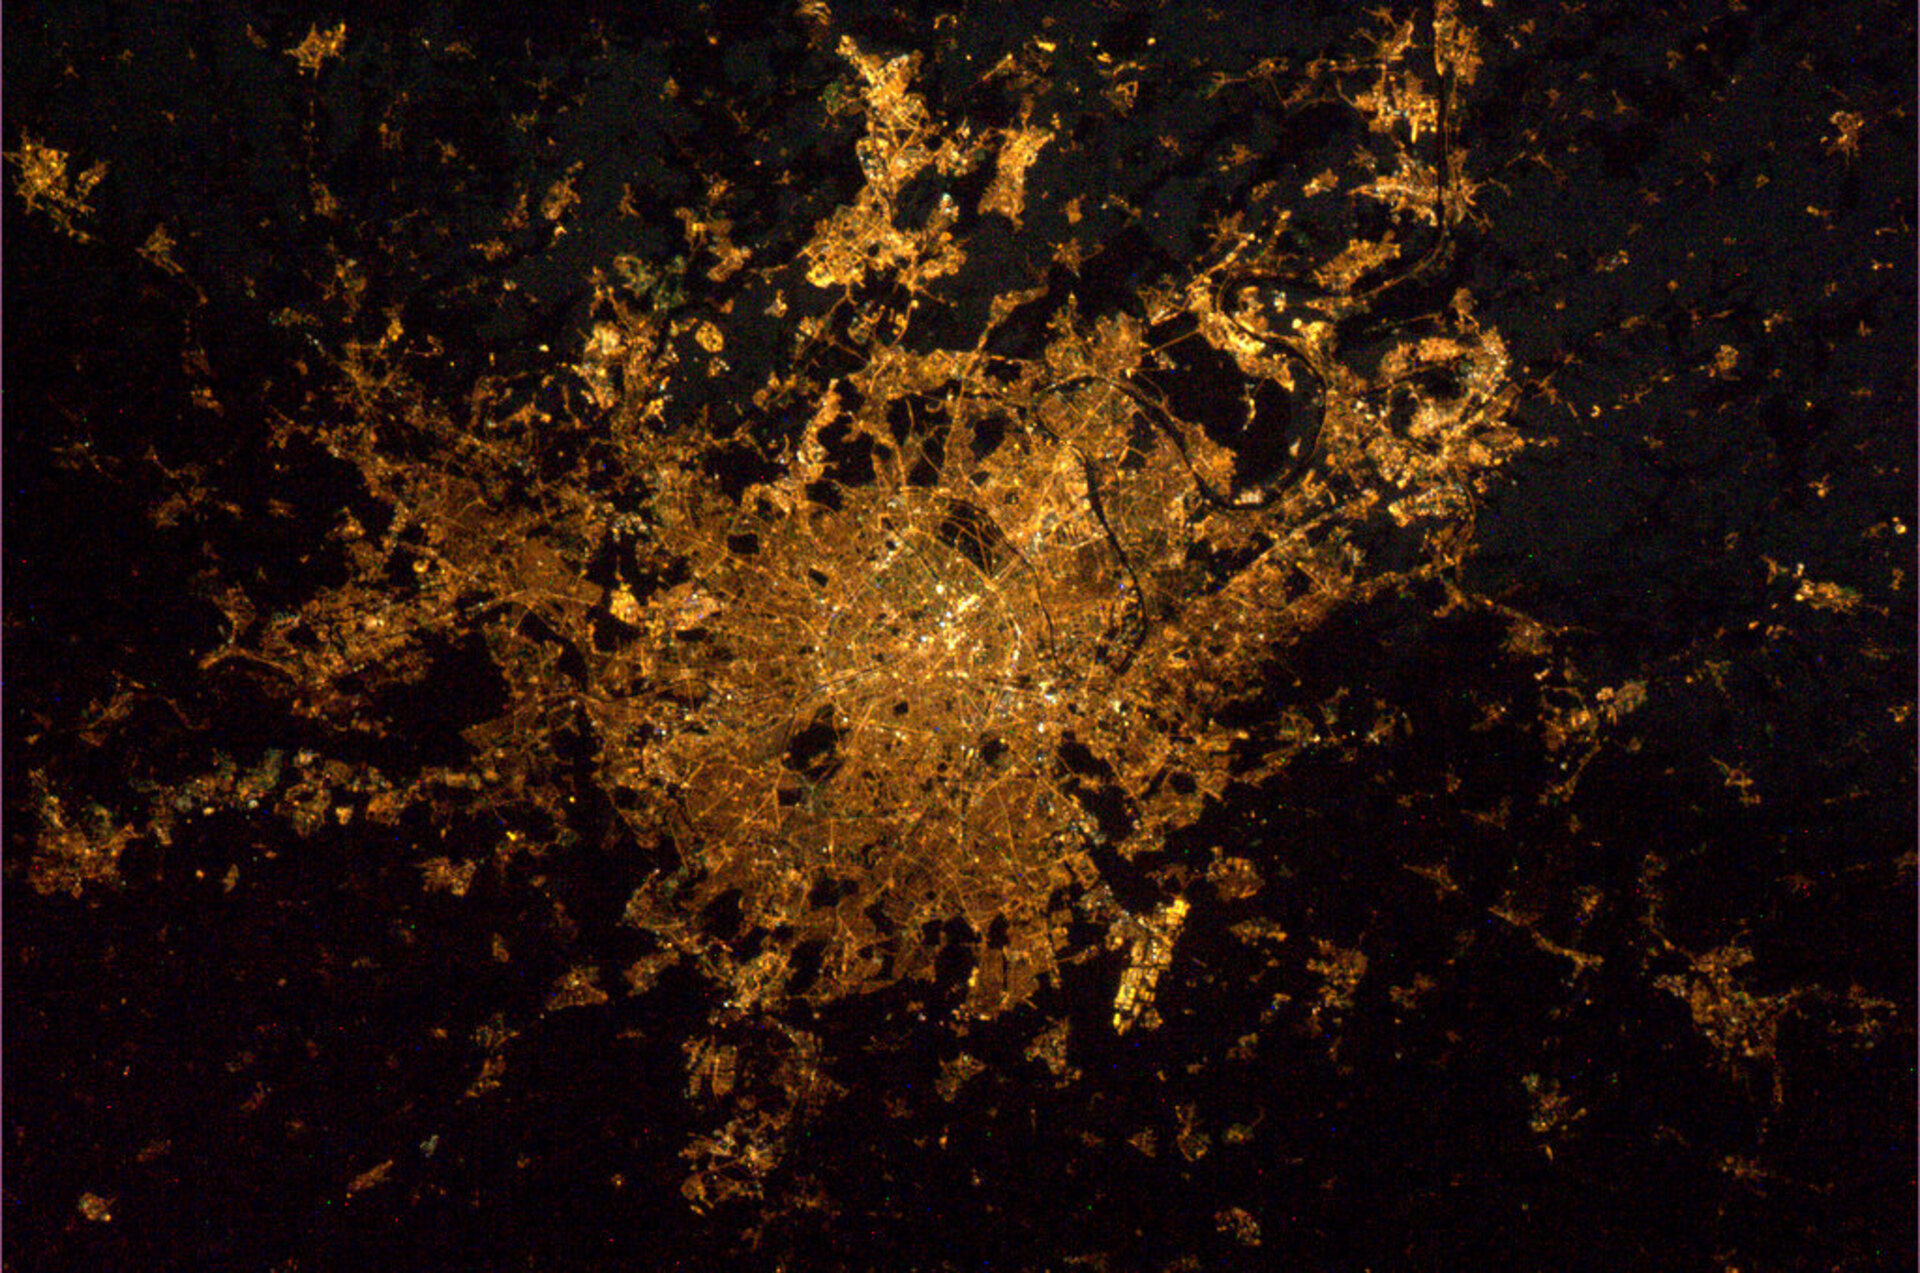 Vue de Paris par l’astronaute @astro_andre à bord de l’ISS